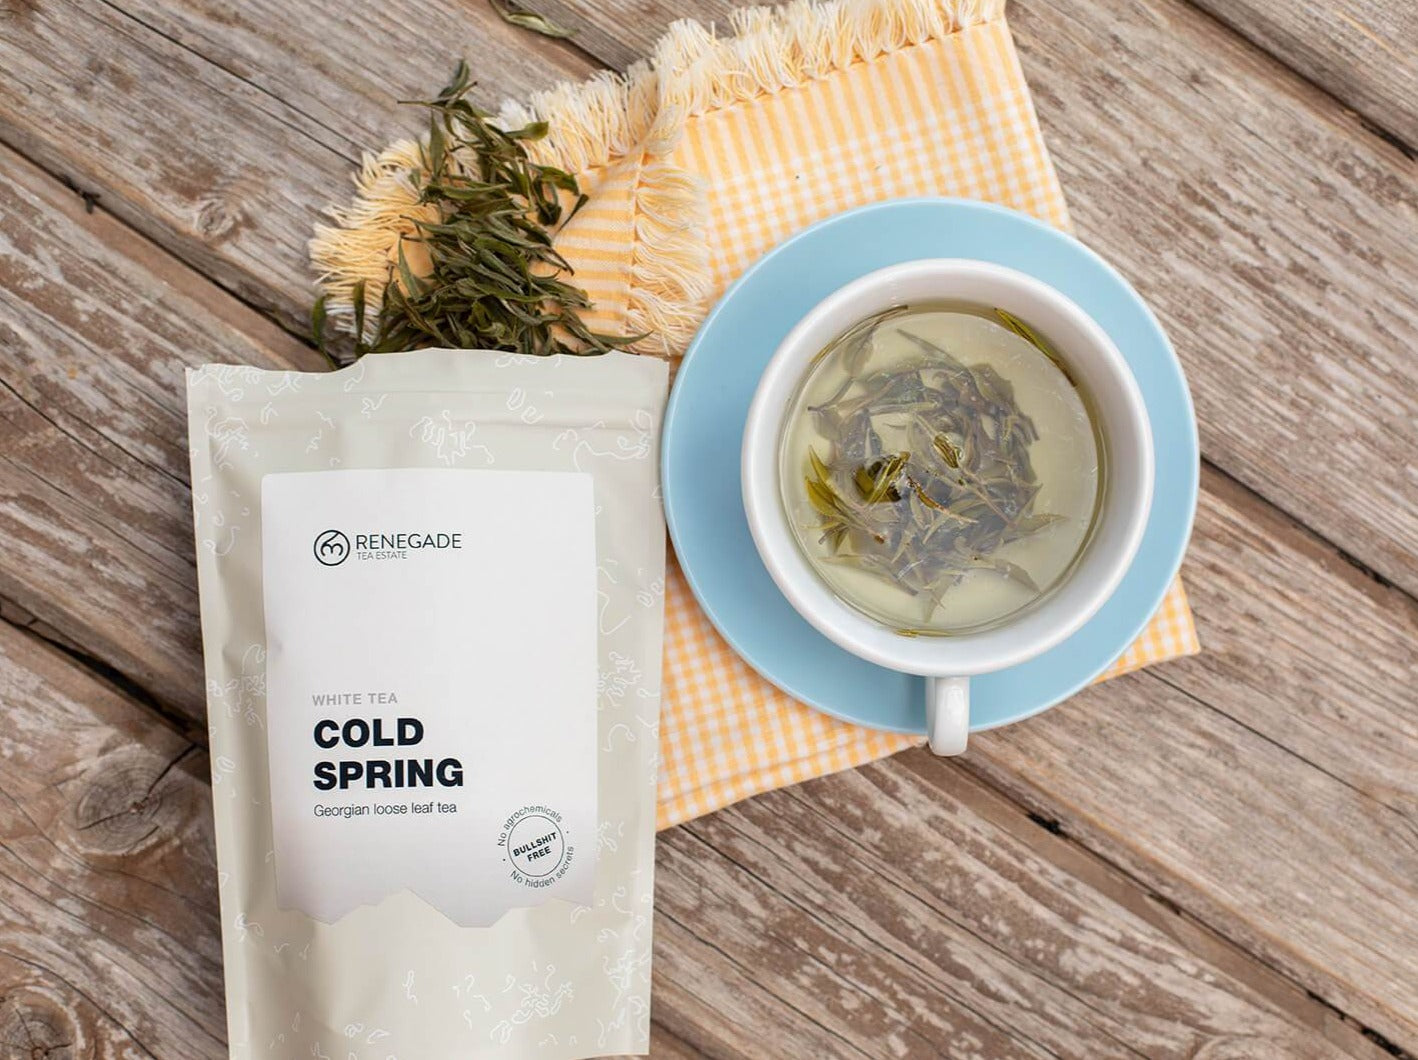 Cold Spring - Georgian white tea